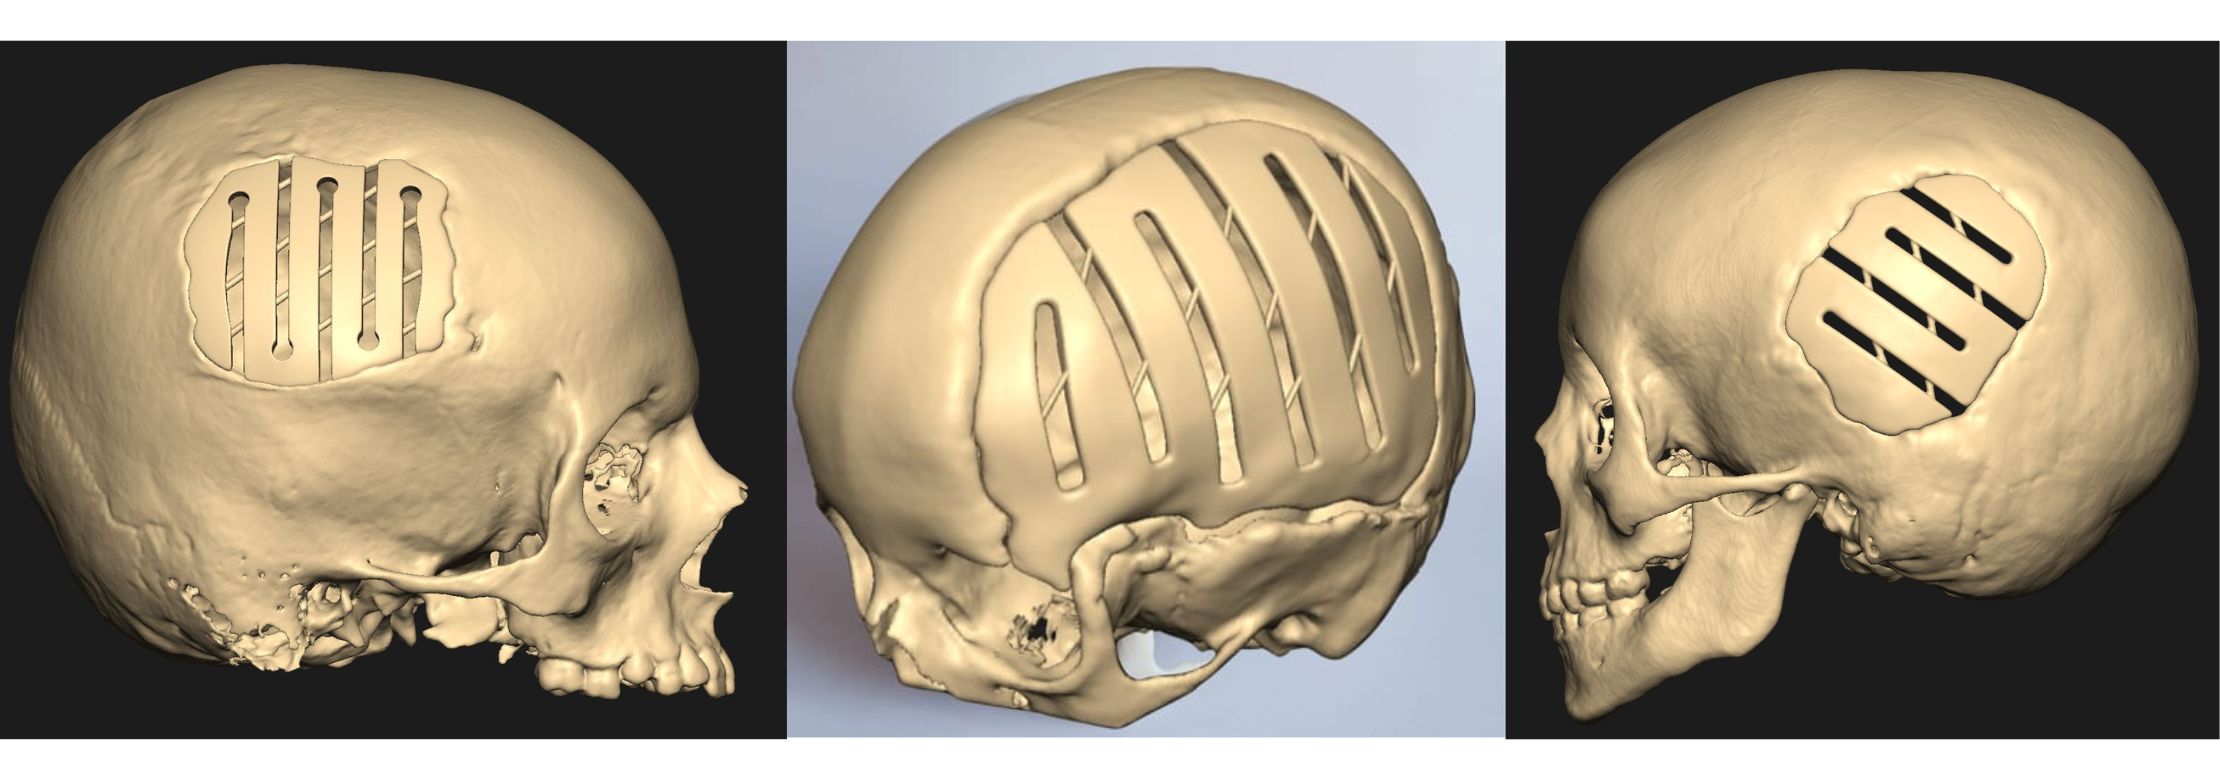 asz patent - adaptacyjny implant czaszki dla najmłodszych pacjentów